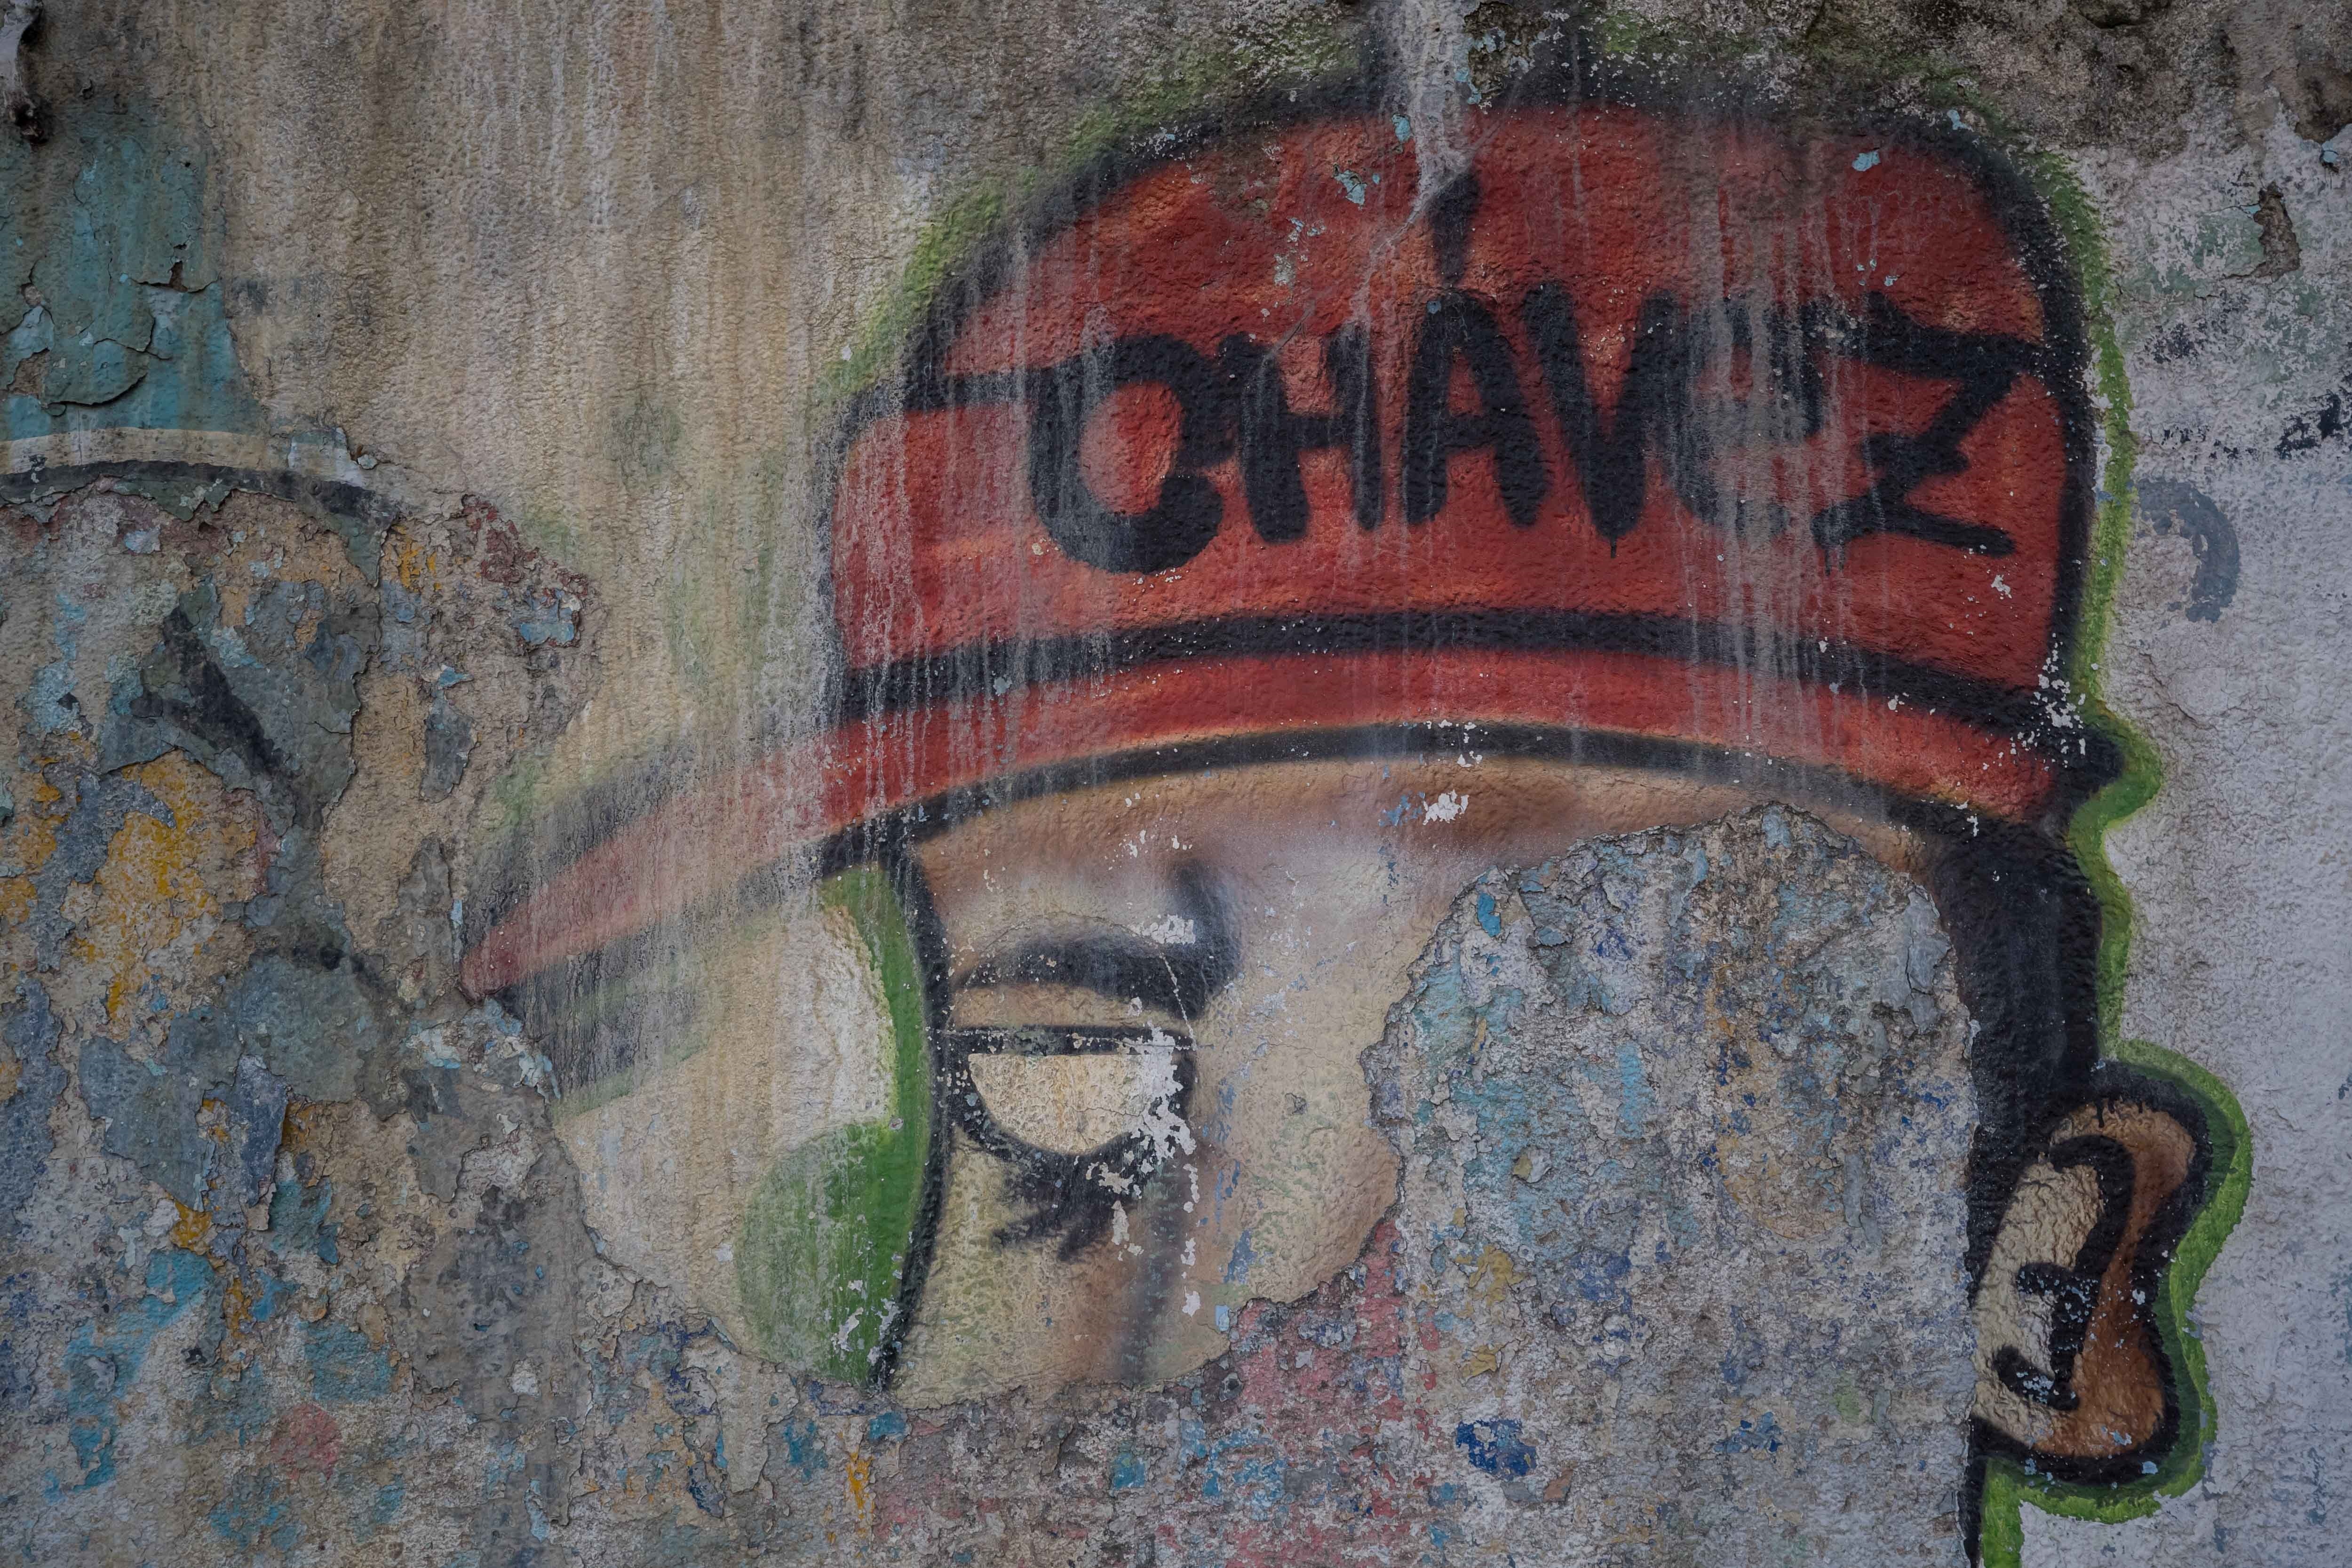 Testigo Directo: El legado de Hugo Chávez, ¿una Venezuela en ruinas? (Video)